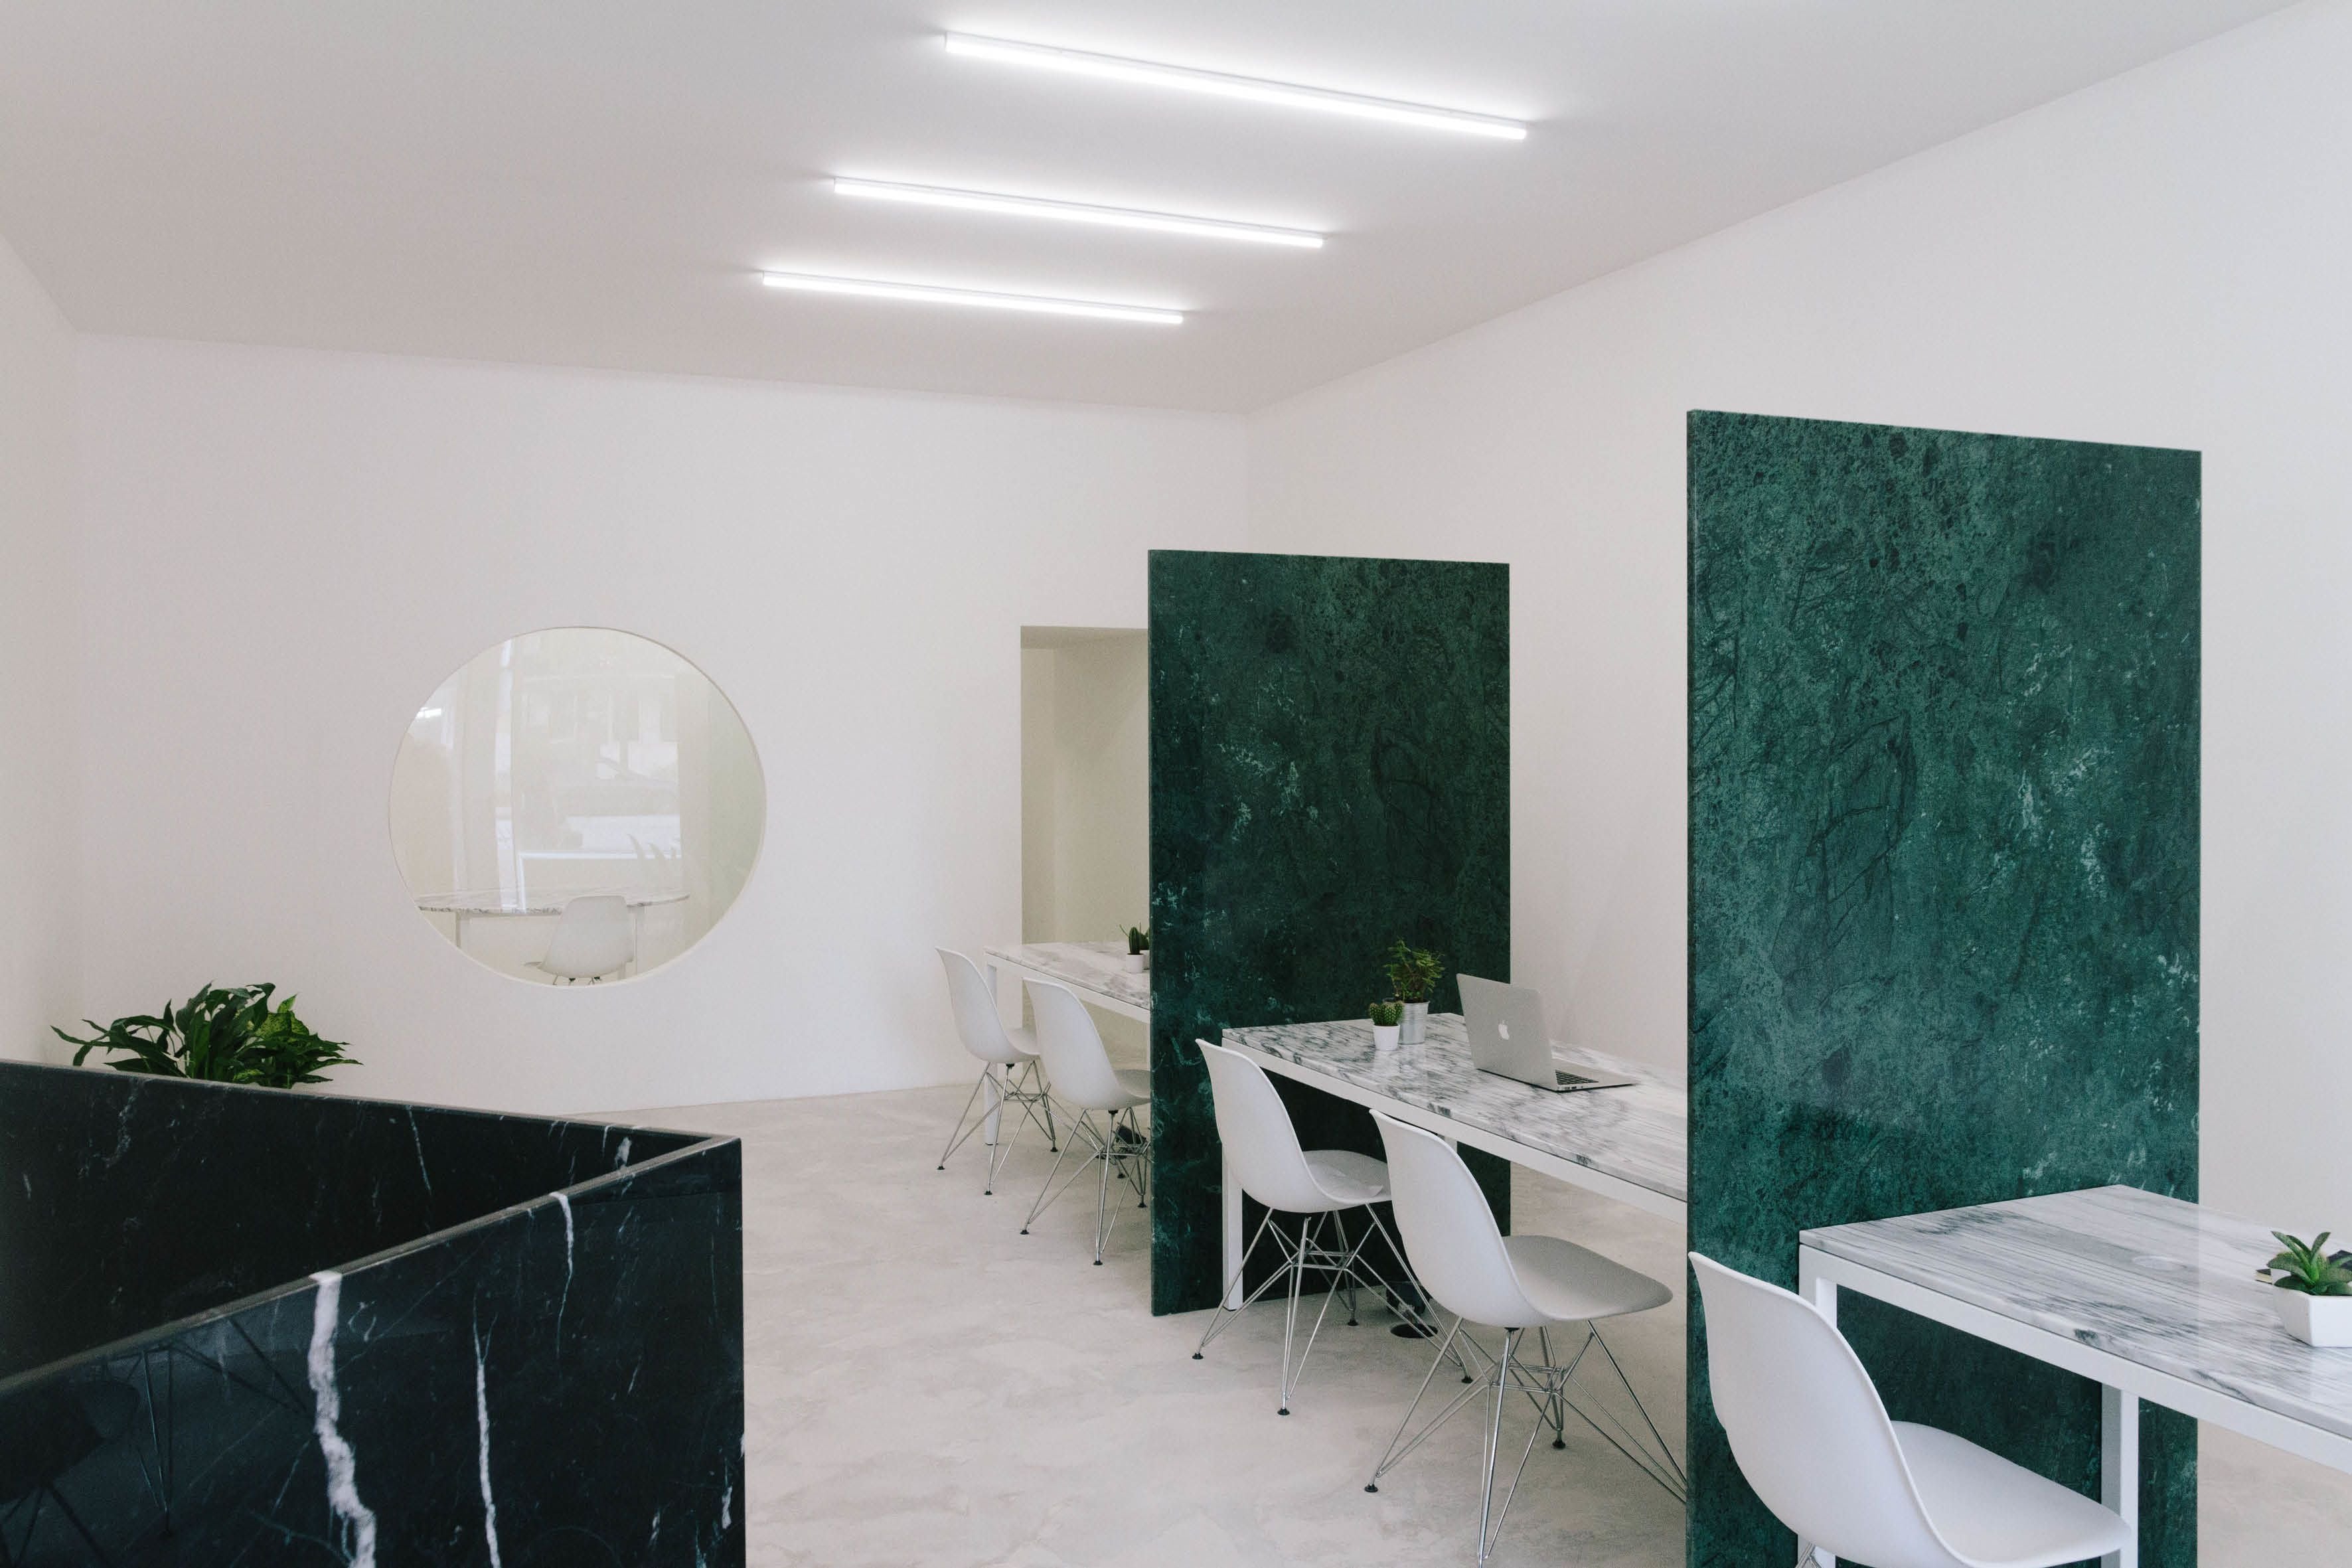 Fala Atelier transformó lo que era una tienda de ropa en Oporto en una agencia inmobiliaria repleta de mármol. Utilizó diferentes colores como el verde para las divisiones de espacios de trabajo, gris para las mesas y negro para la recepción.